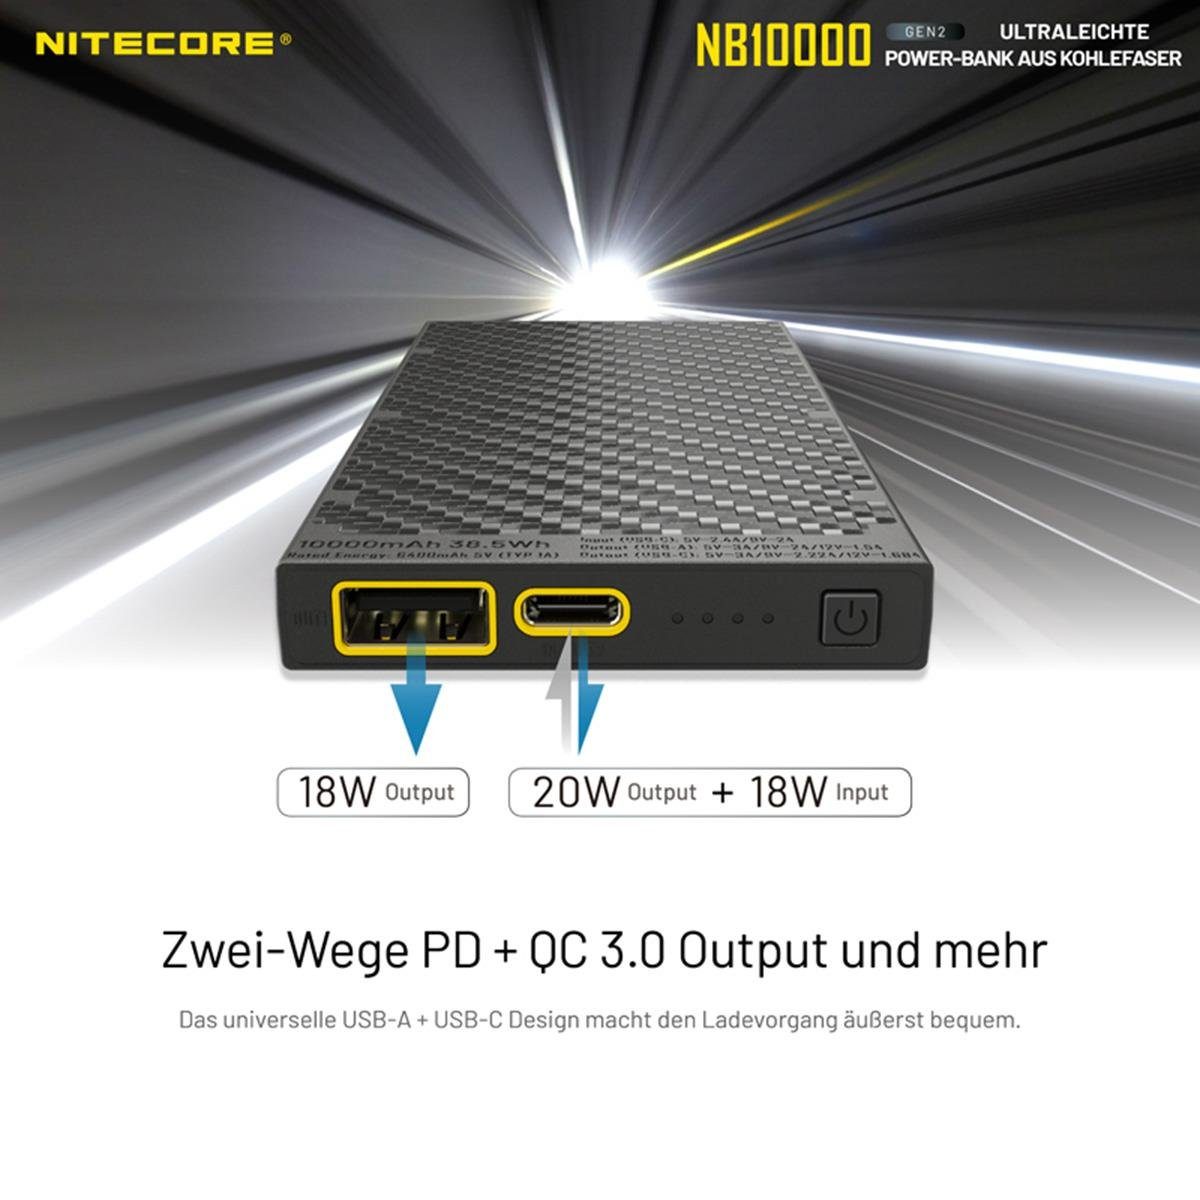 Nitecore LED Taschenlampe Powerbank 10000mAh mit NB10000